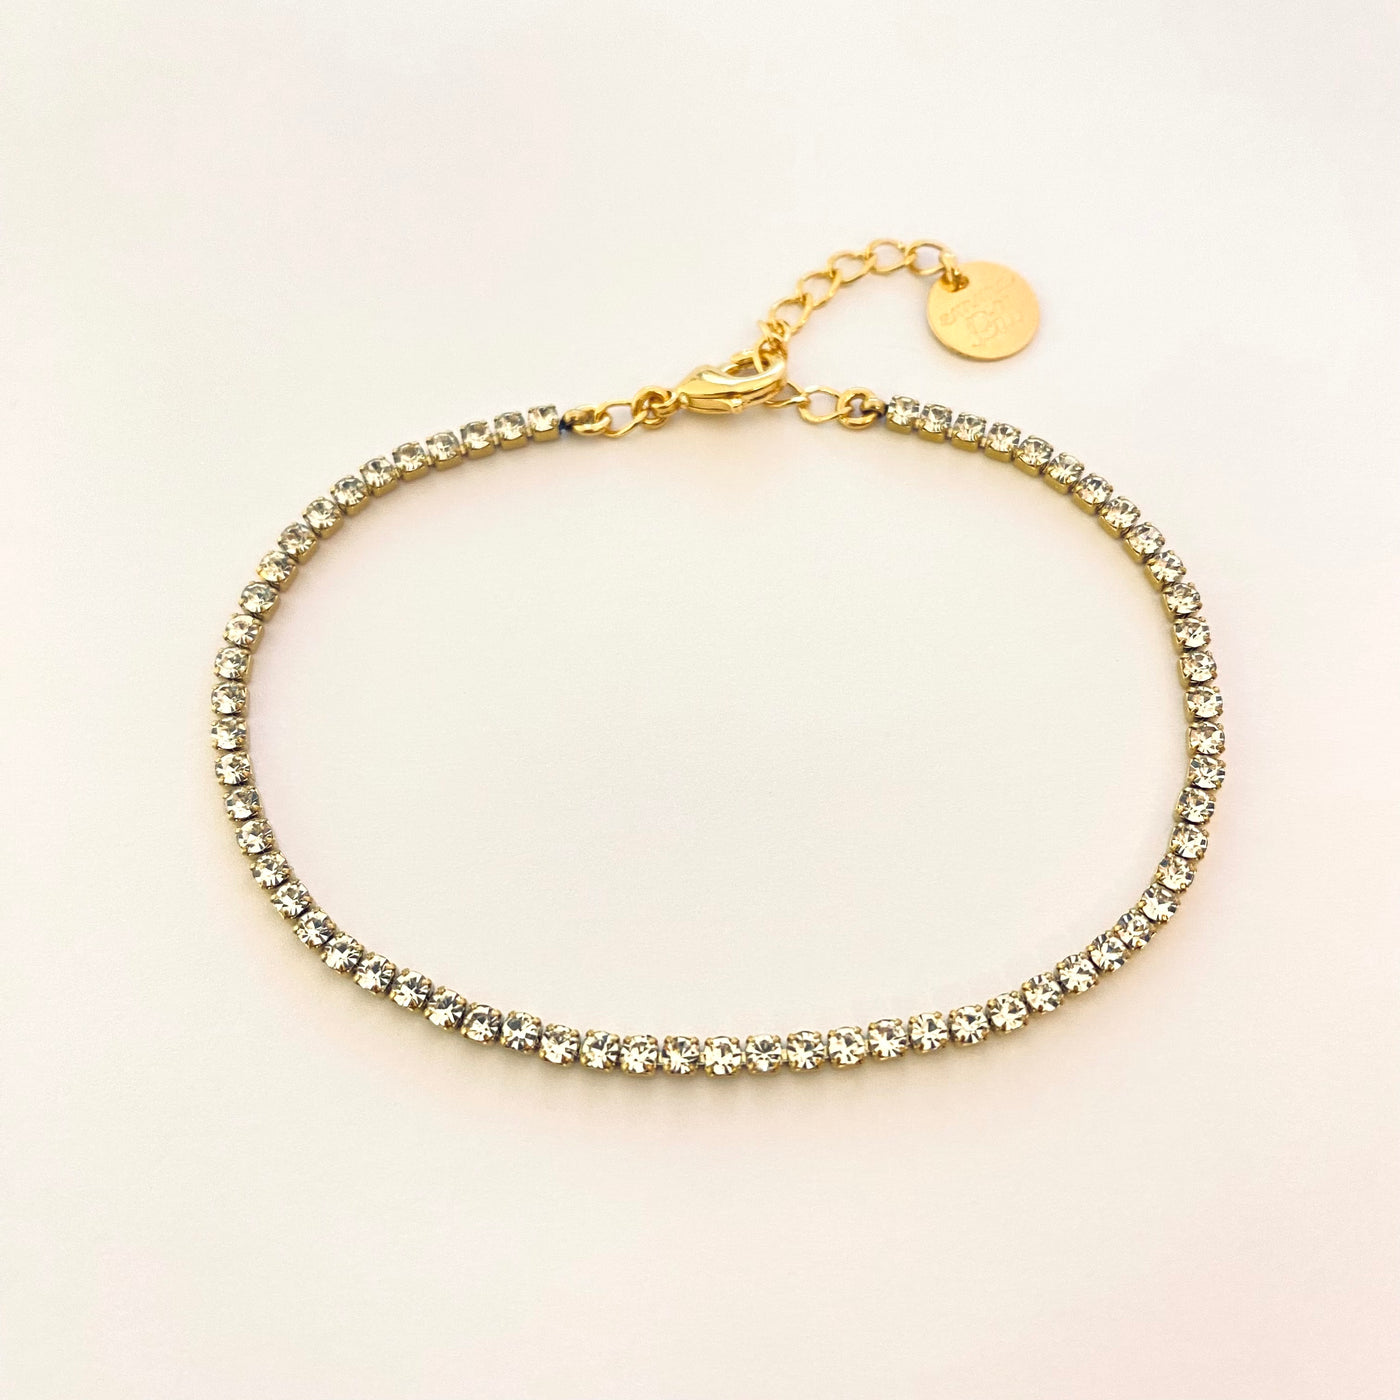 STRASS - Gold plated bracelet